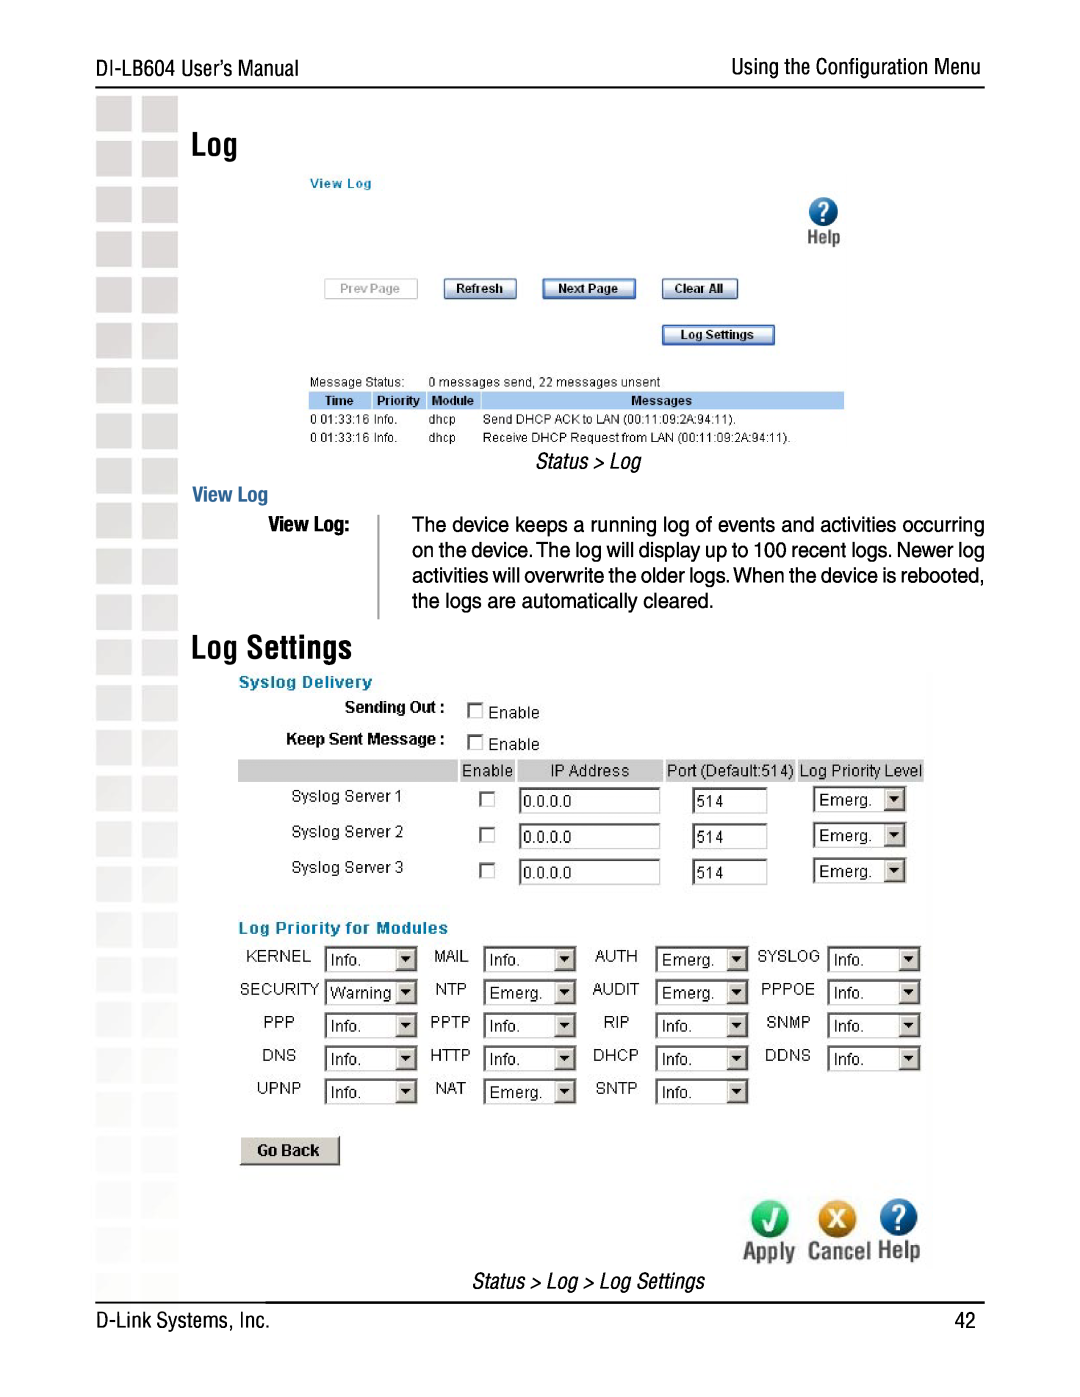 D-Link DI-LB604 manual View Log, Using the Conﬁguration Menu, Status Log Log Settings 